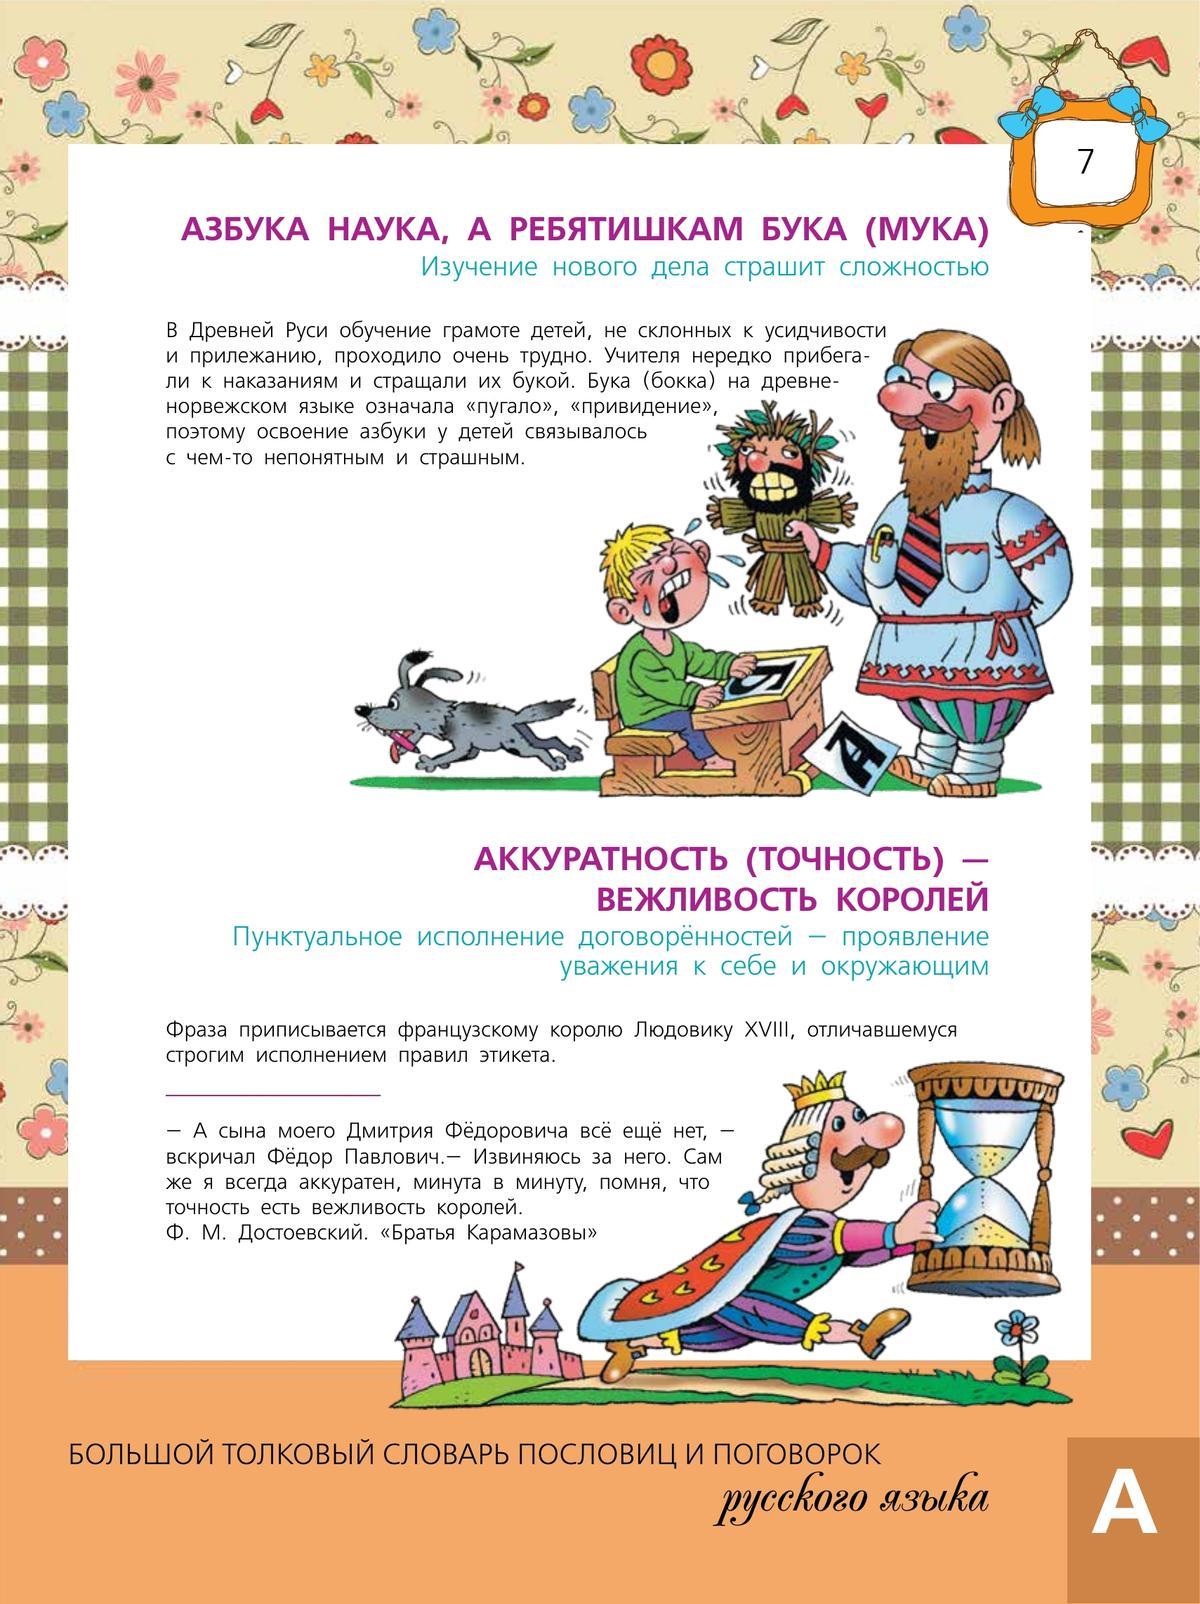 Большой толковый словарь пословиц и поговорок русского языка для детей 5